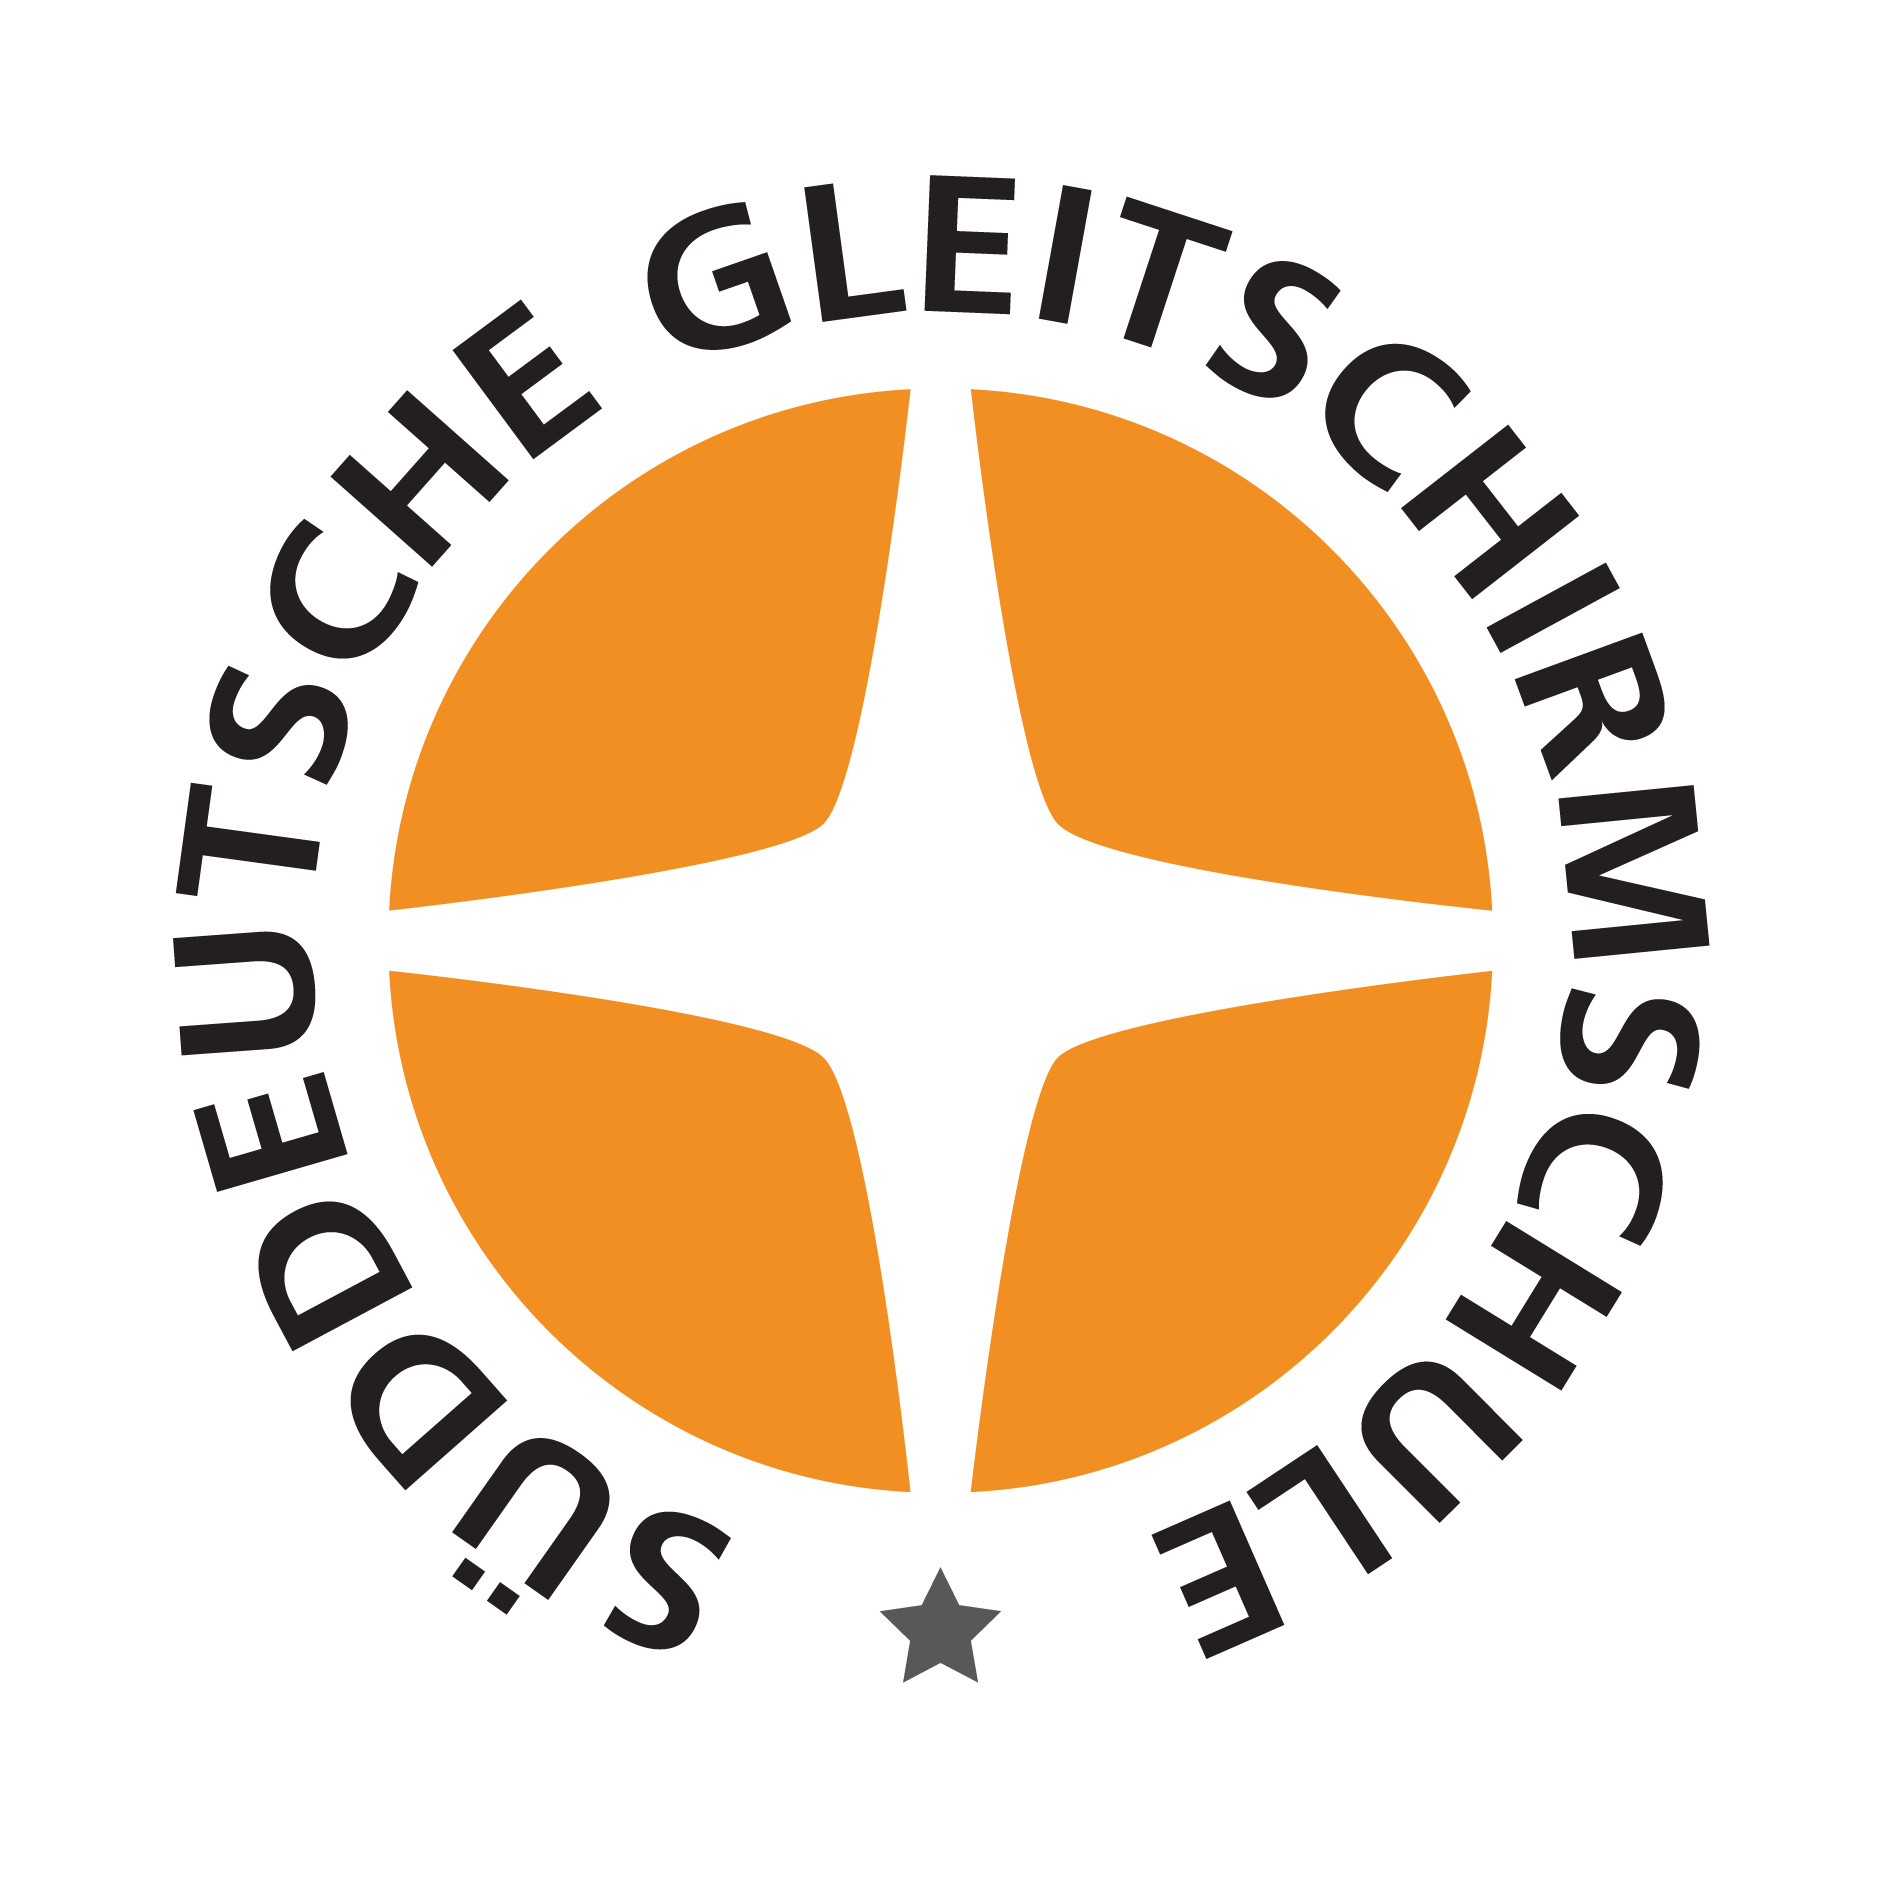 Süddeutsche Gleitschirmschule